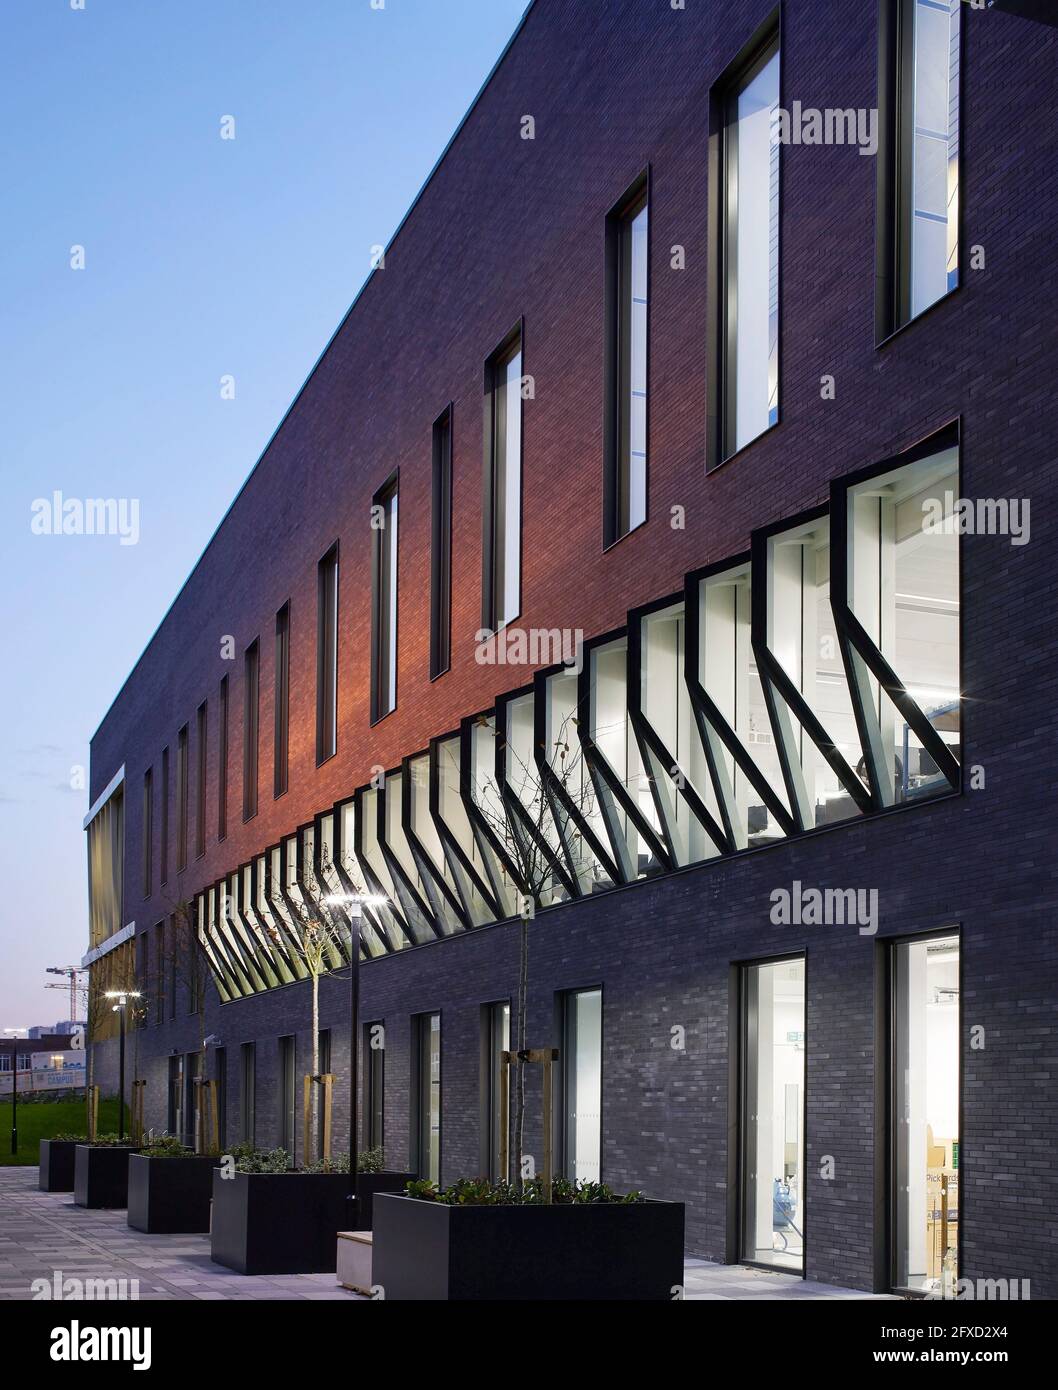 Erhebung entlang der Fassade bei Dämmerung mit beleuchteten Innenräumen. University of Birmingham, Collaborative Teaching Laboratory, Birmingham, Großbritannien. Architekt: Stockfoto